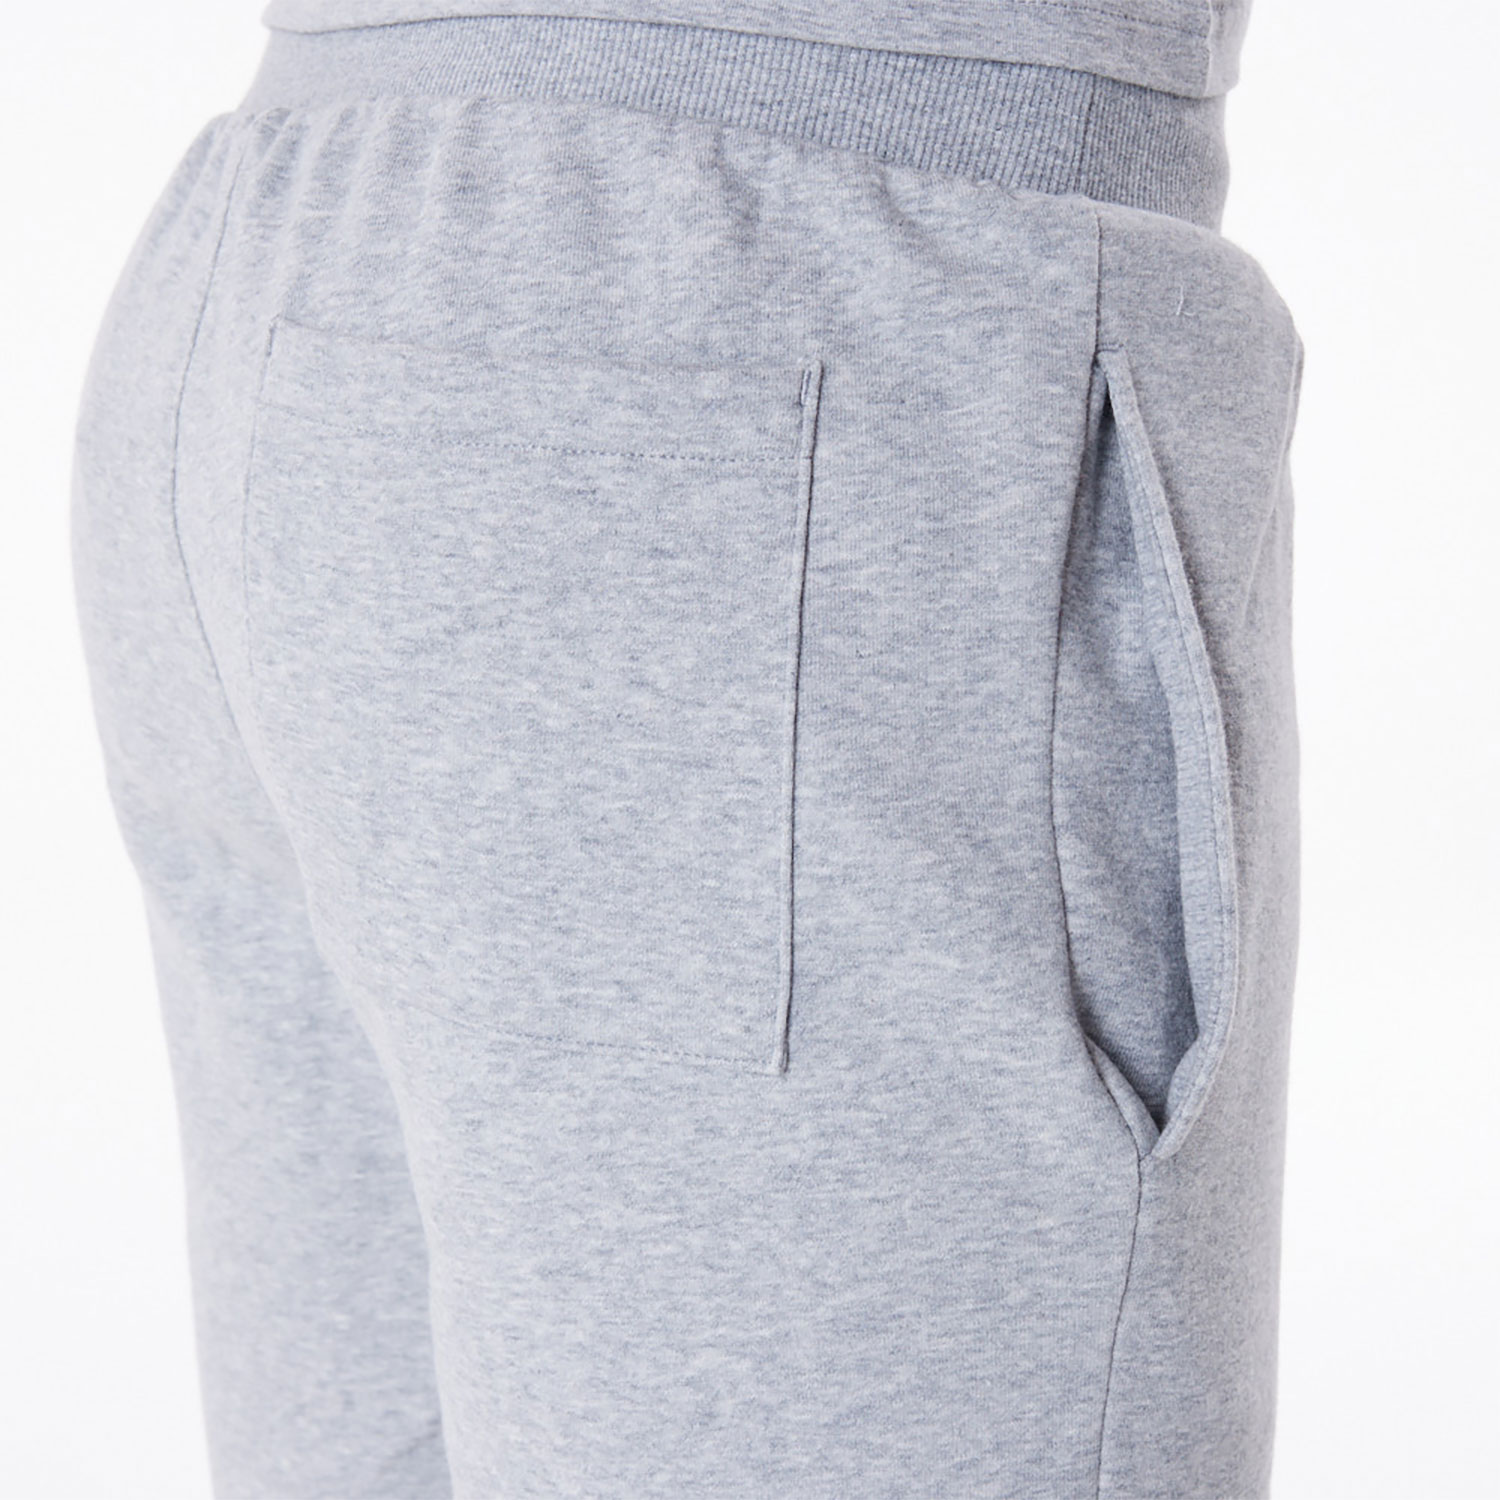 New Era Essential Grey Shorts